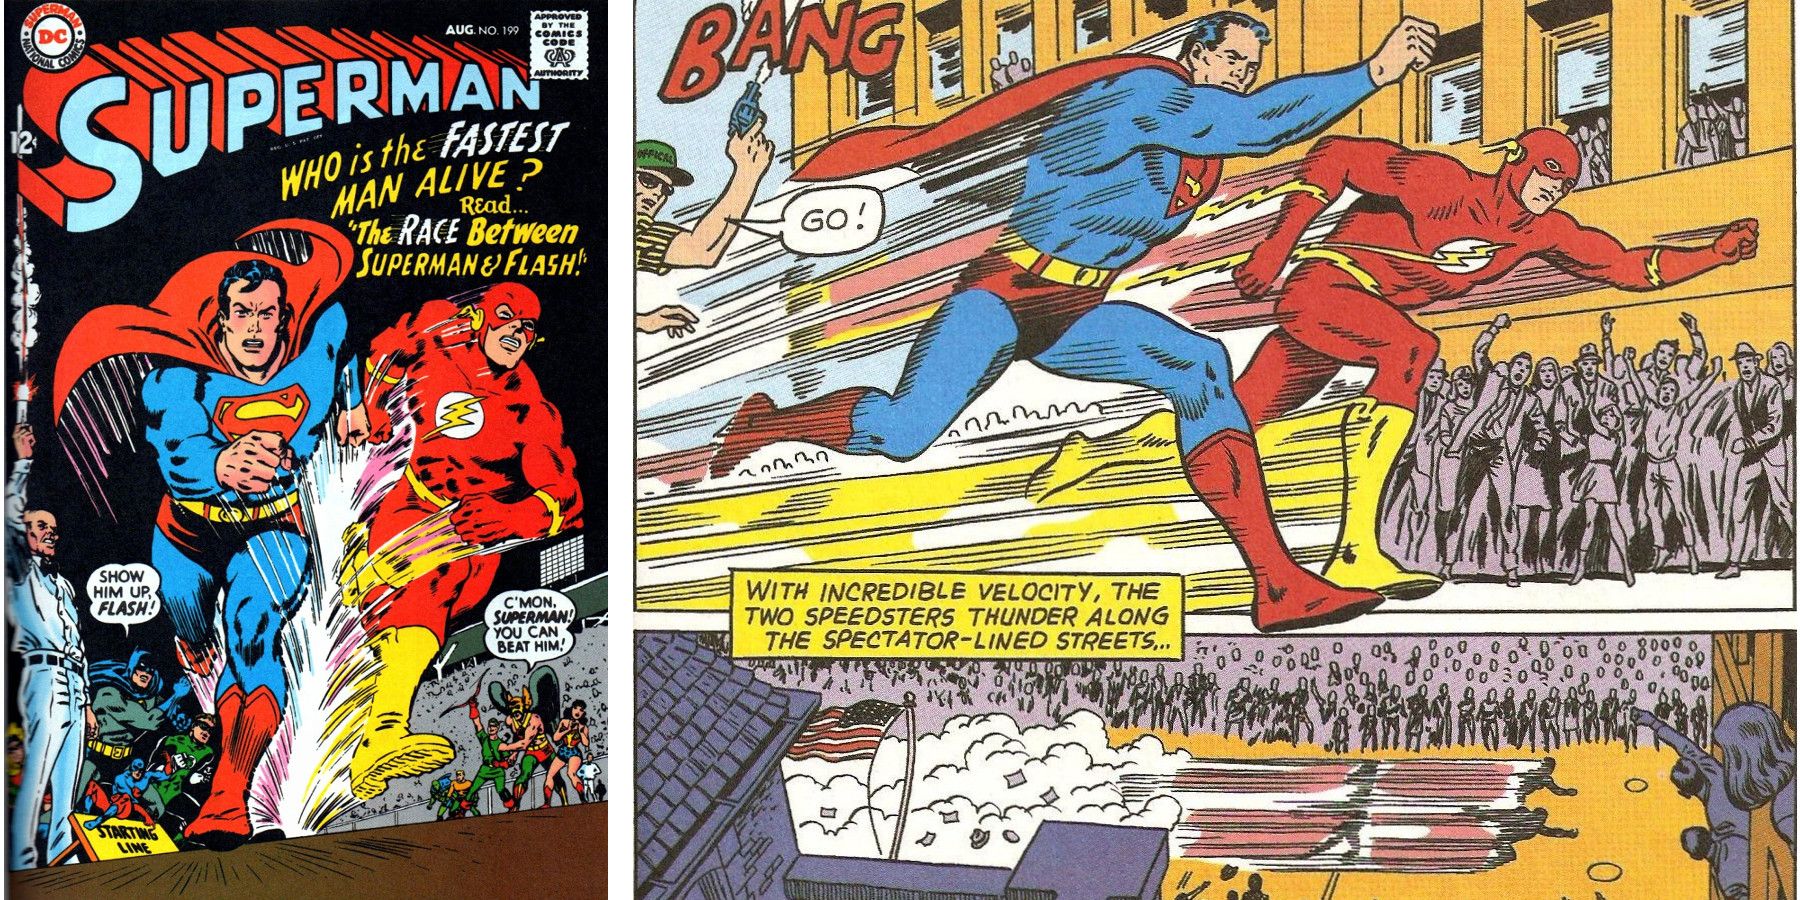 Superman vs The Flash